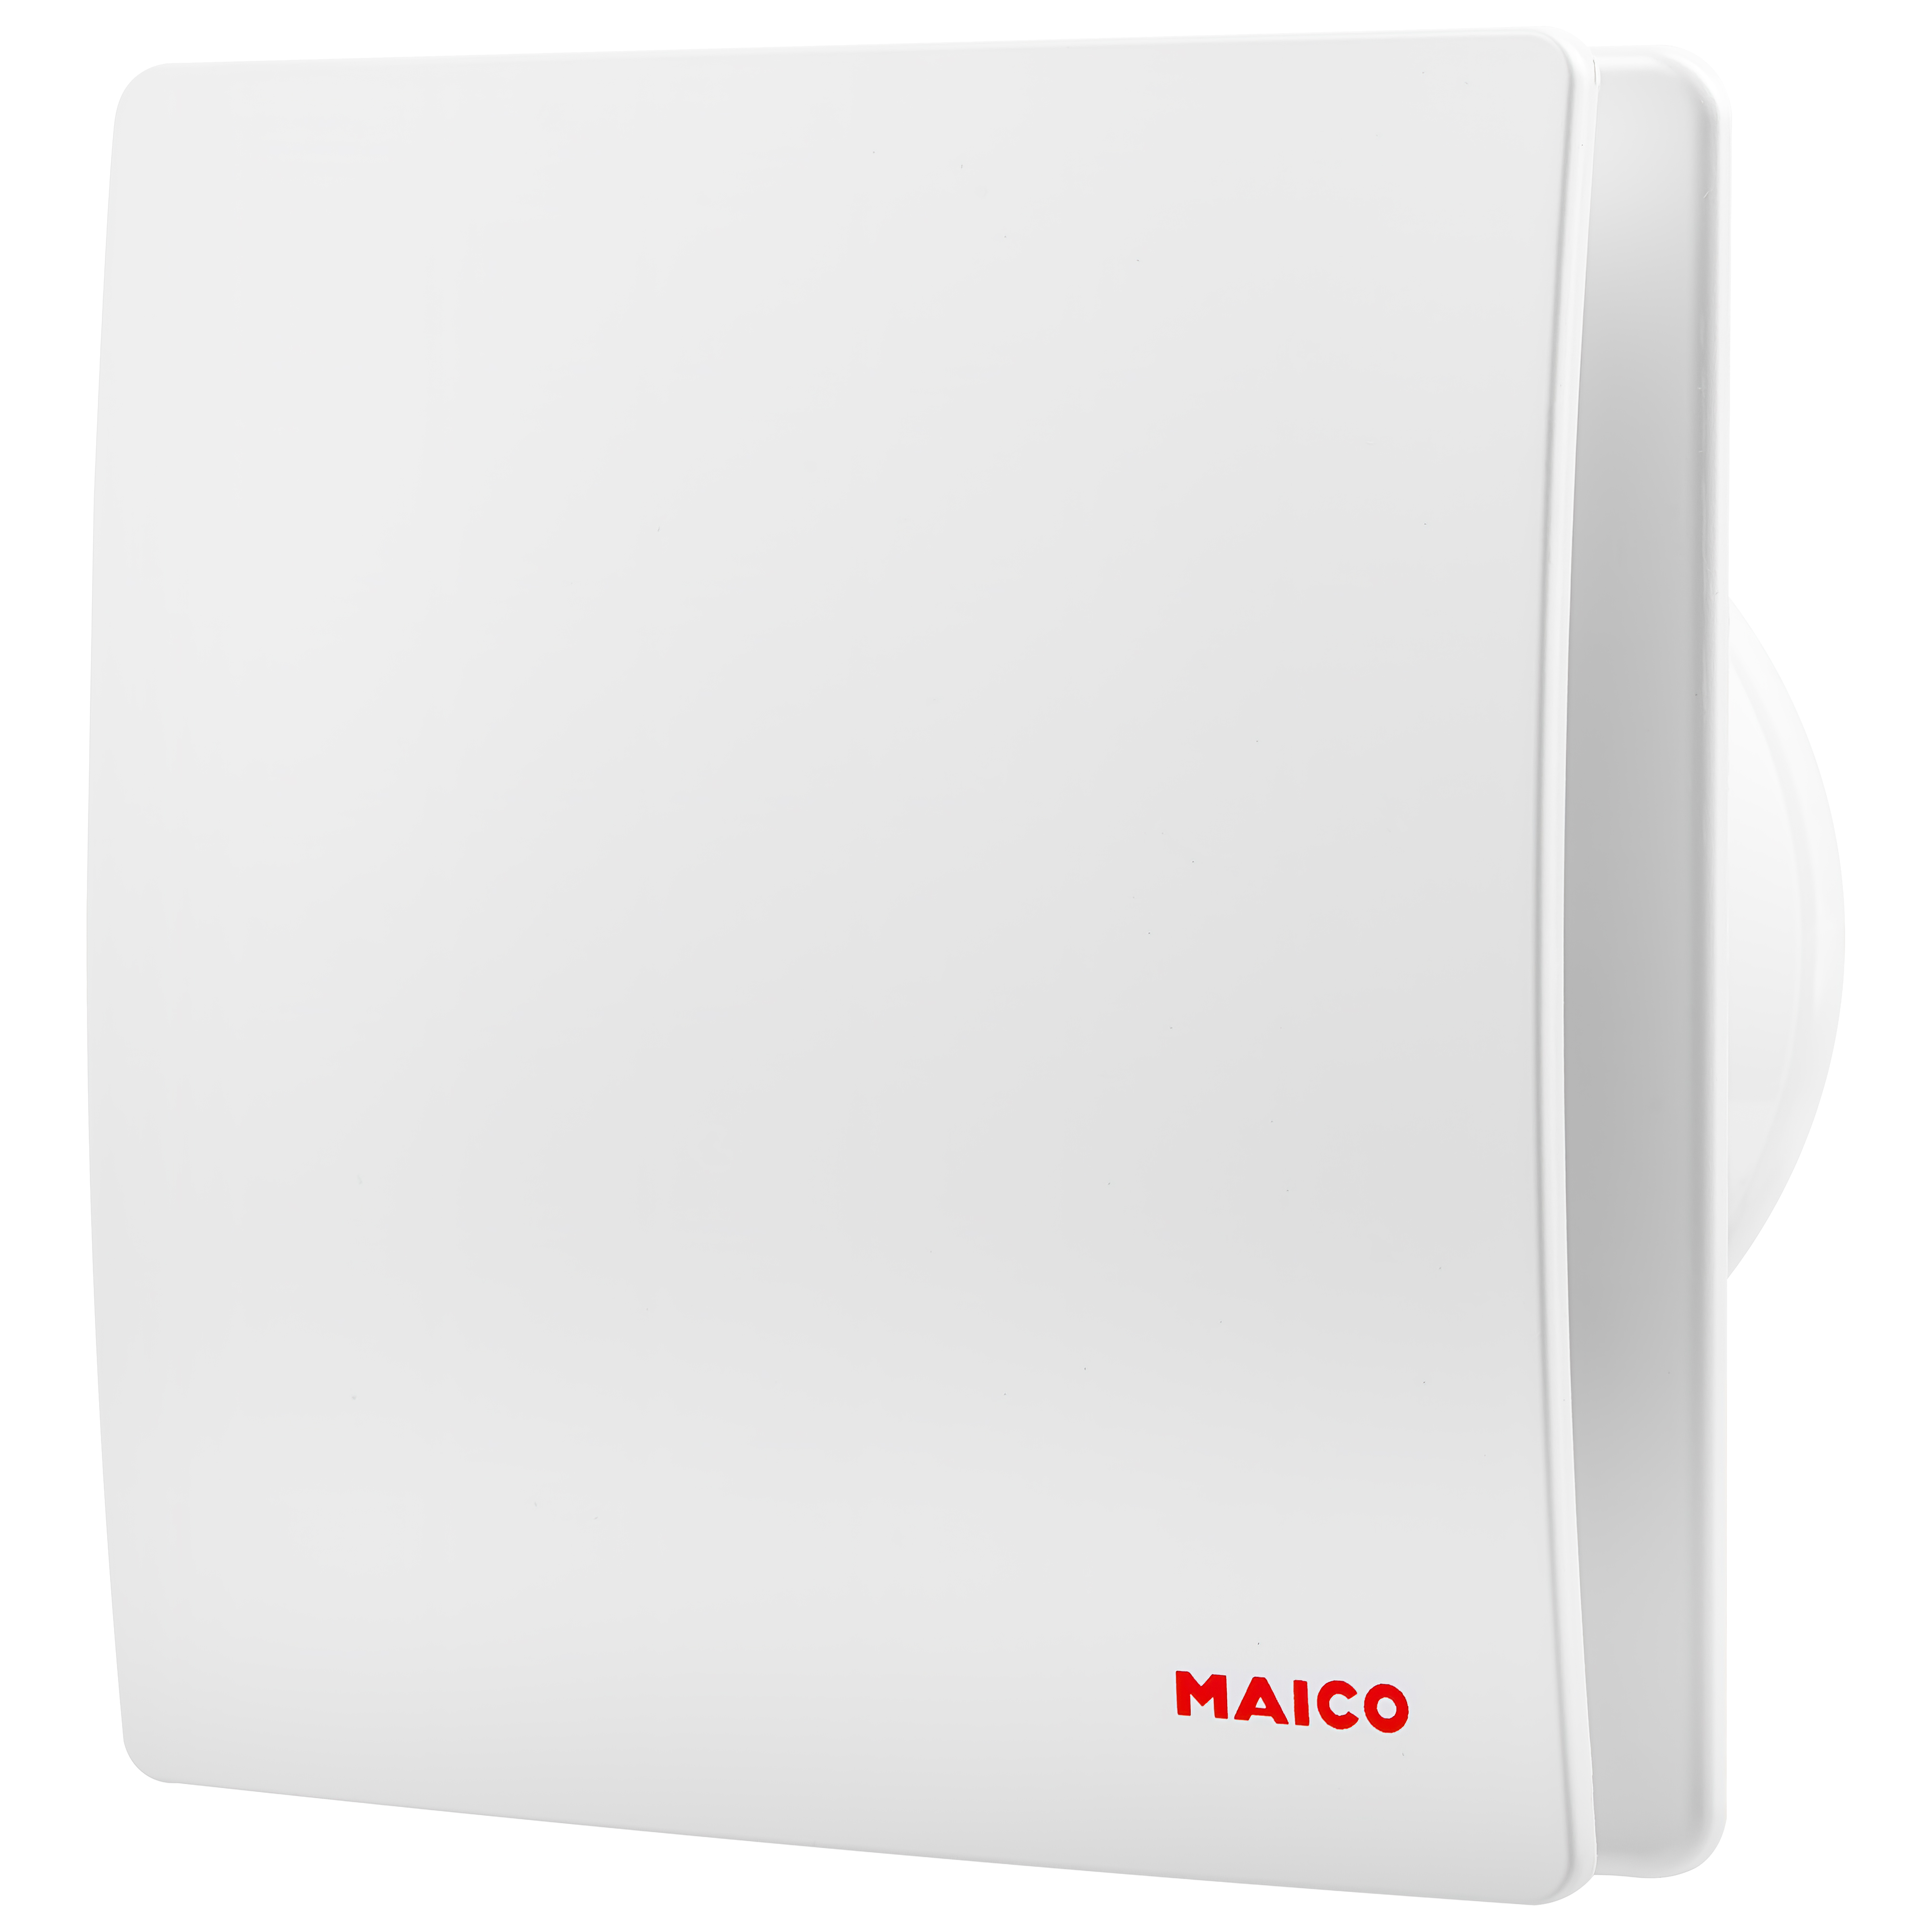 Цена вытяжной вентилятор maico 120 мм Maico AWB 120 C в Киеве